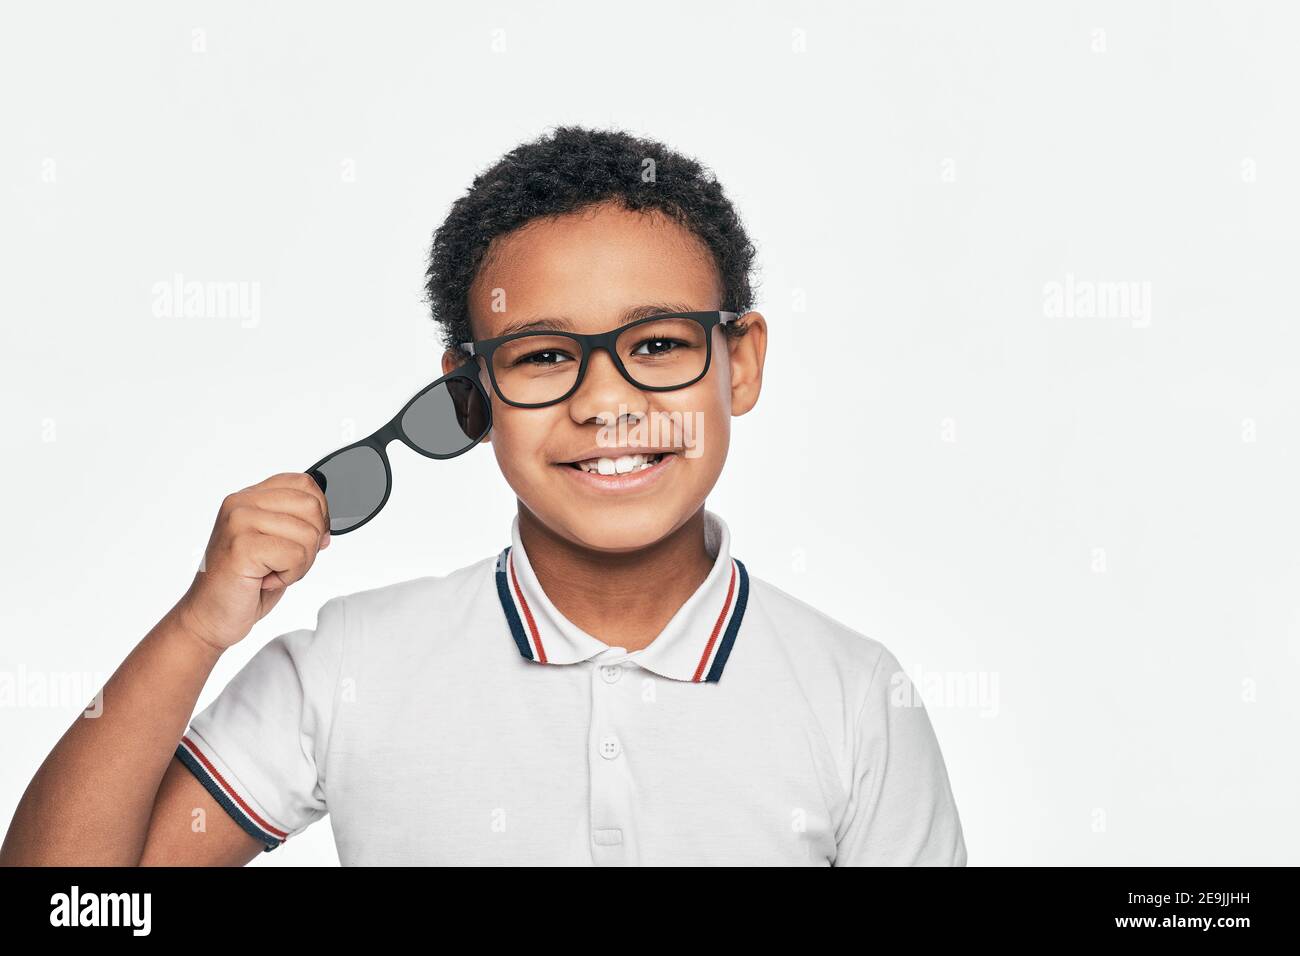 Un garçon afro-américain annonce des lunettes de soleil. Lunettes, 2 en 1 Banque D'Images